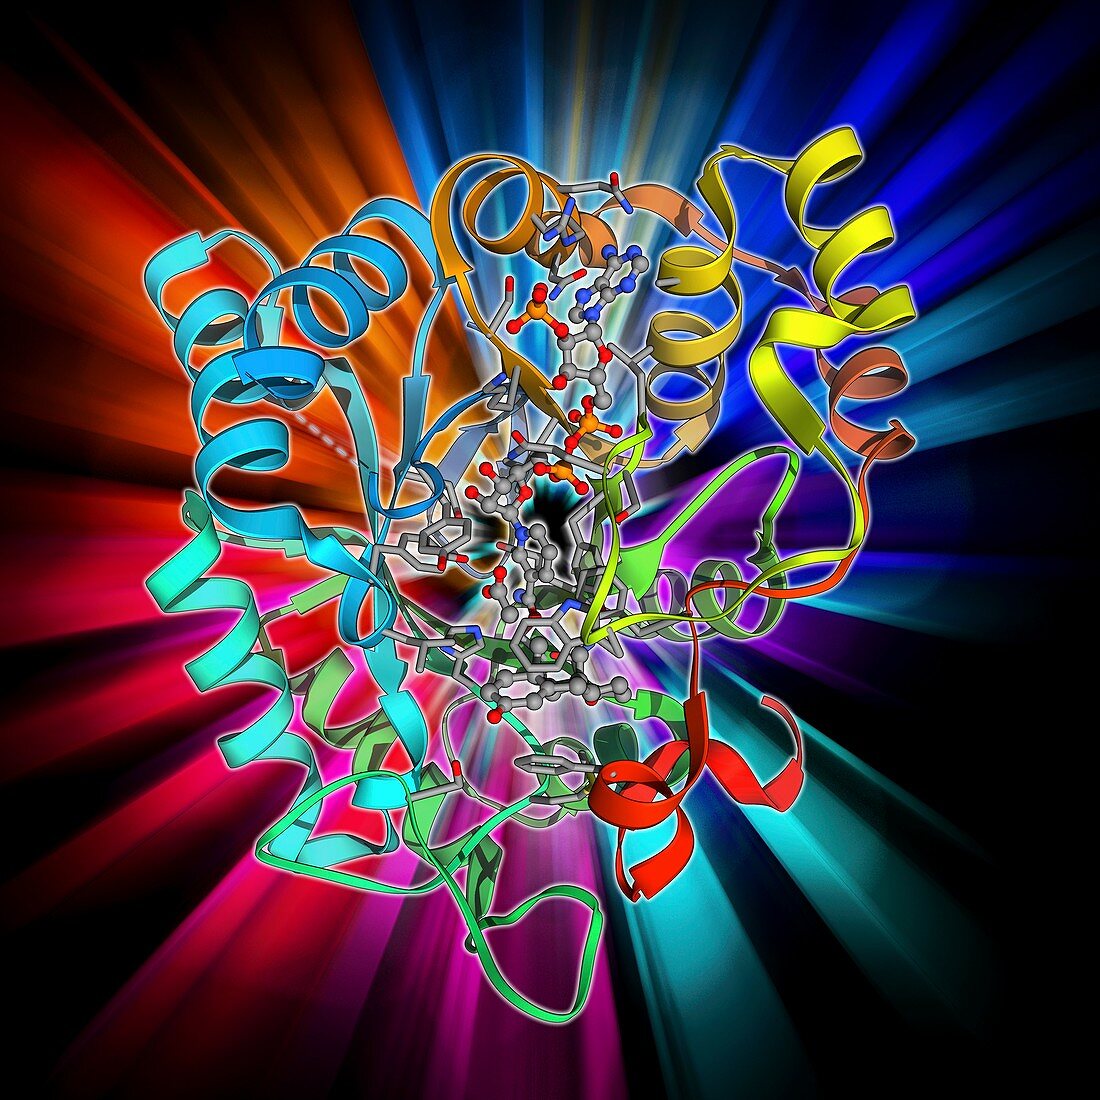 Hydroxysteroid dehydrogenase molecule